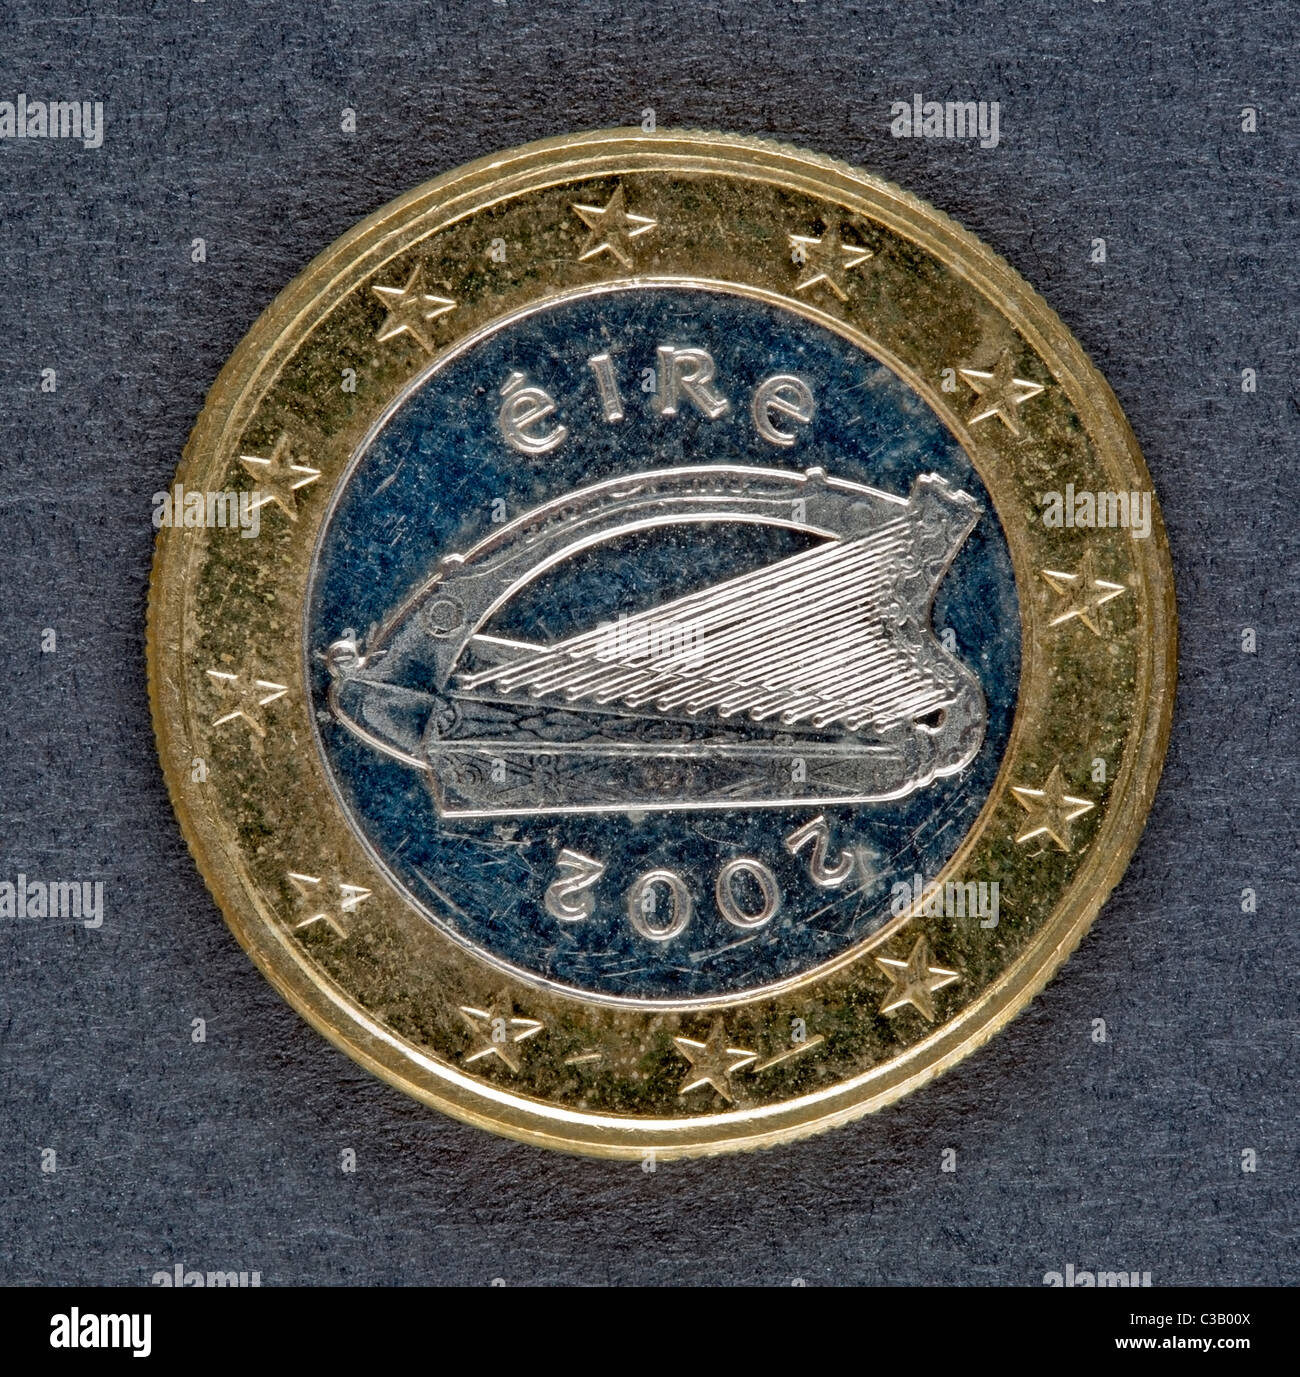 Irish one euro coin Stock Photo